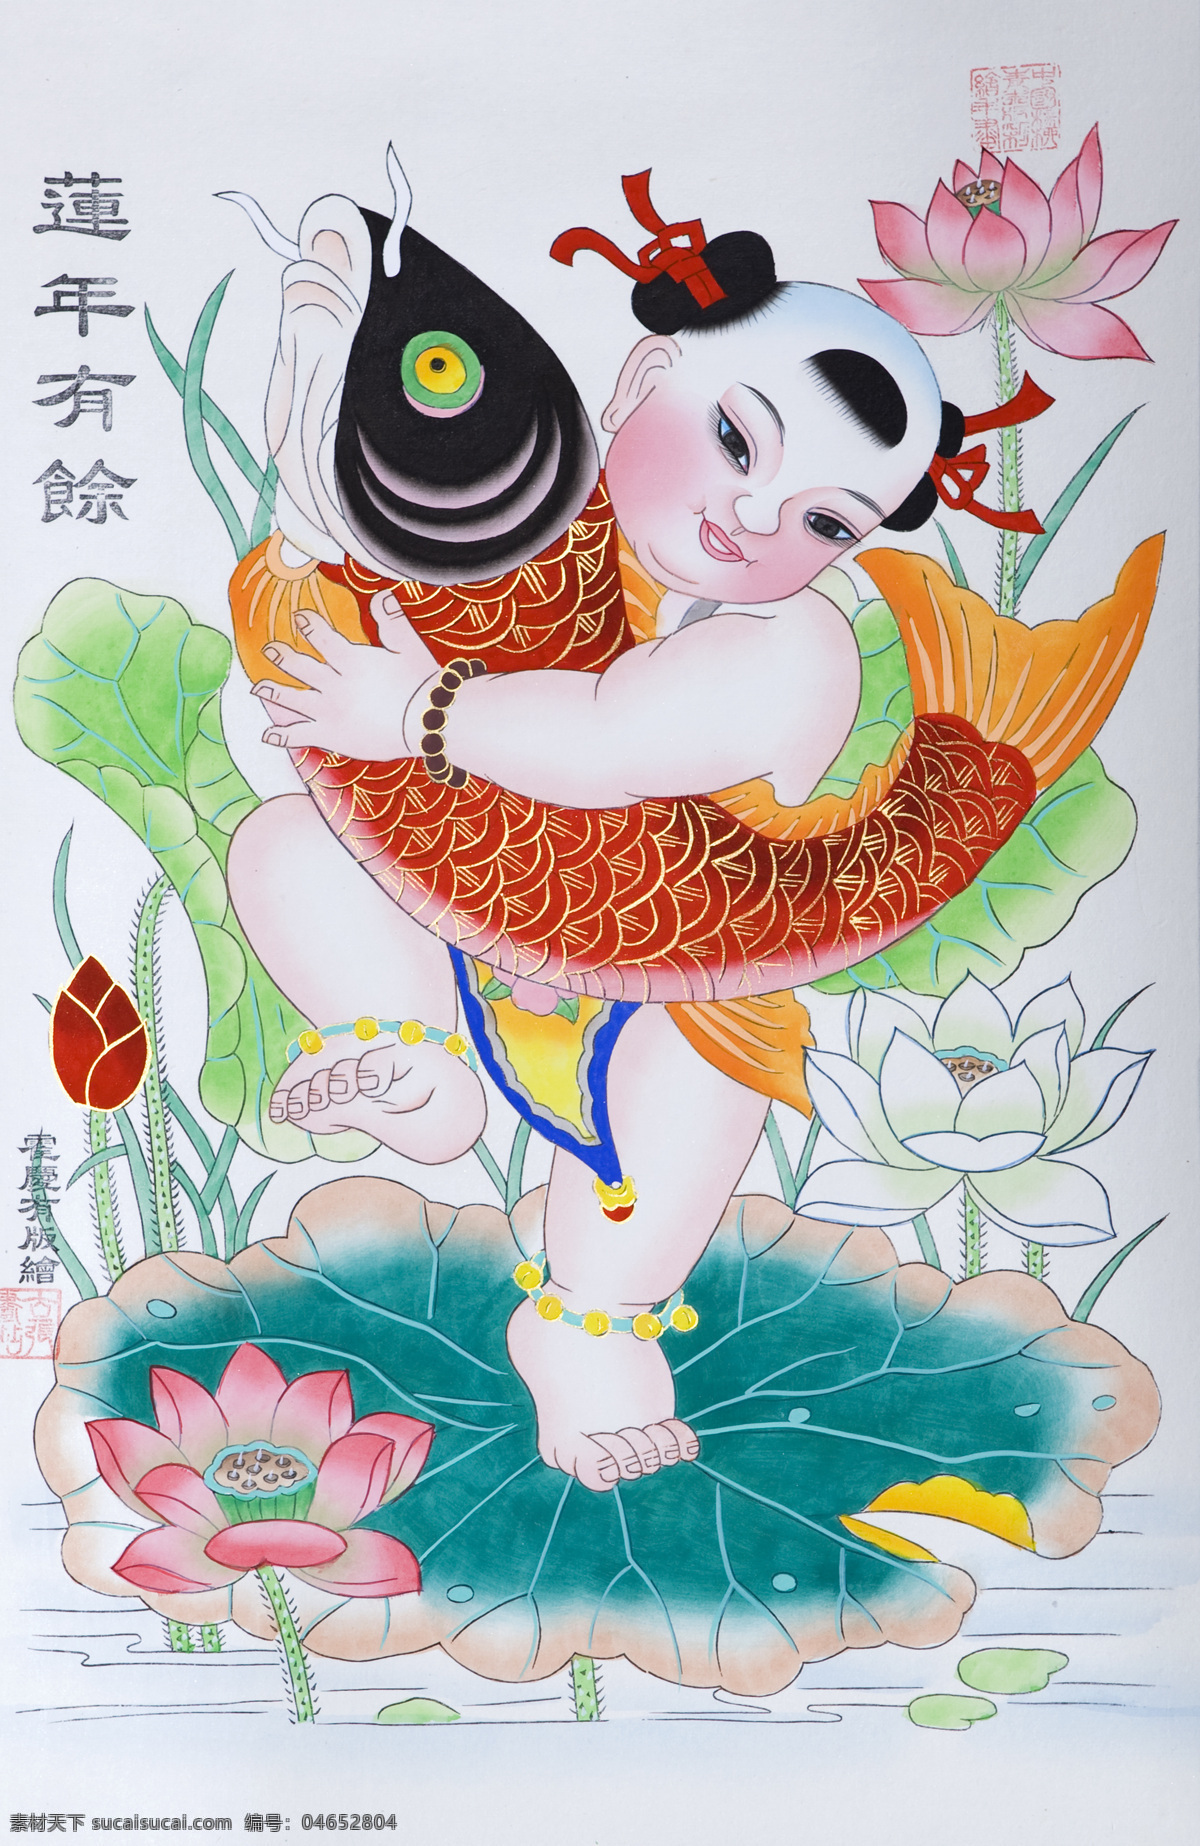 天津 杨柳青 木版年画 年画 民俗 春节 绘画书法 文化艺术